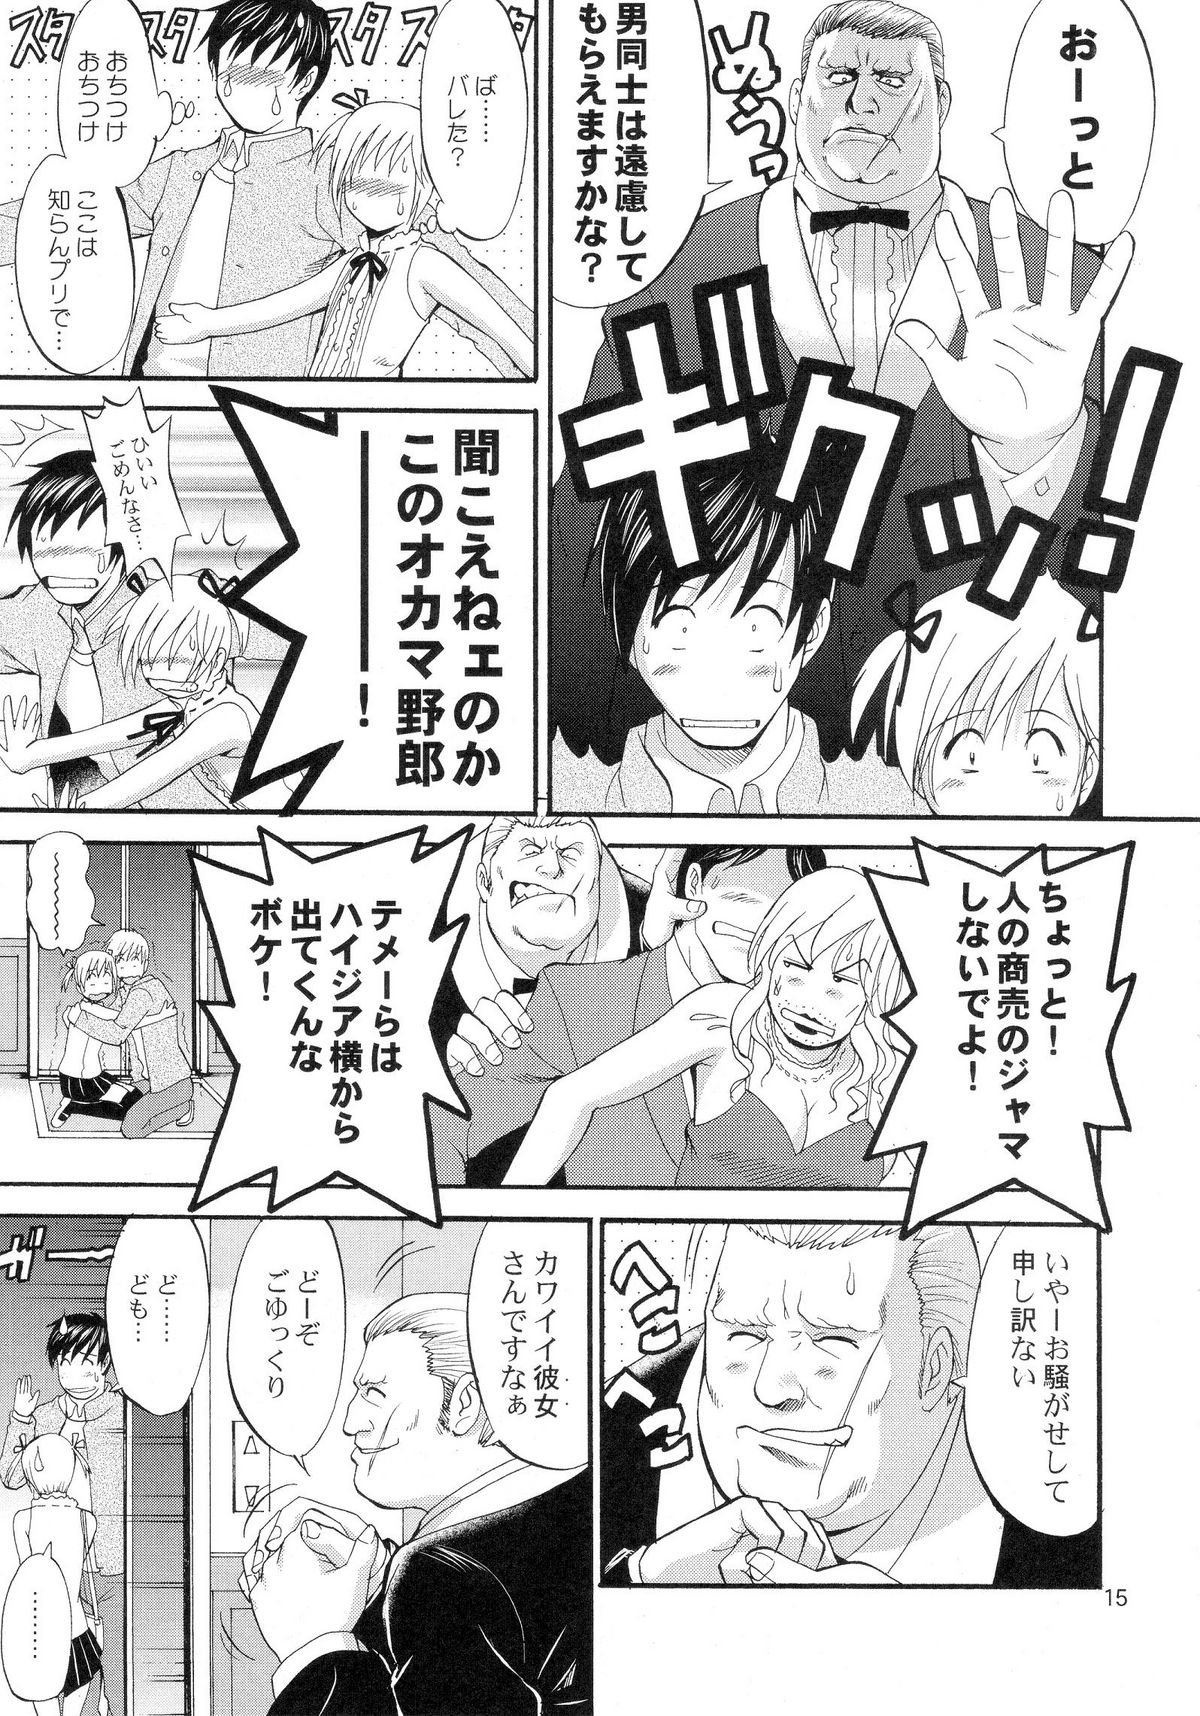 (COMIC1) [Saigado] Boku no Pico Comic + Koushiki Character Genanshuu (Boku no Pico) page 13 full